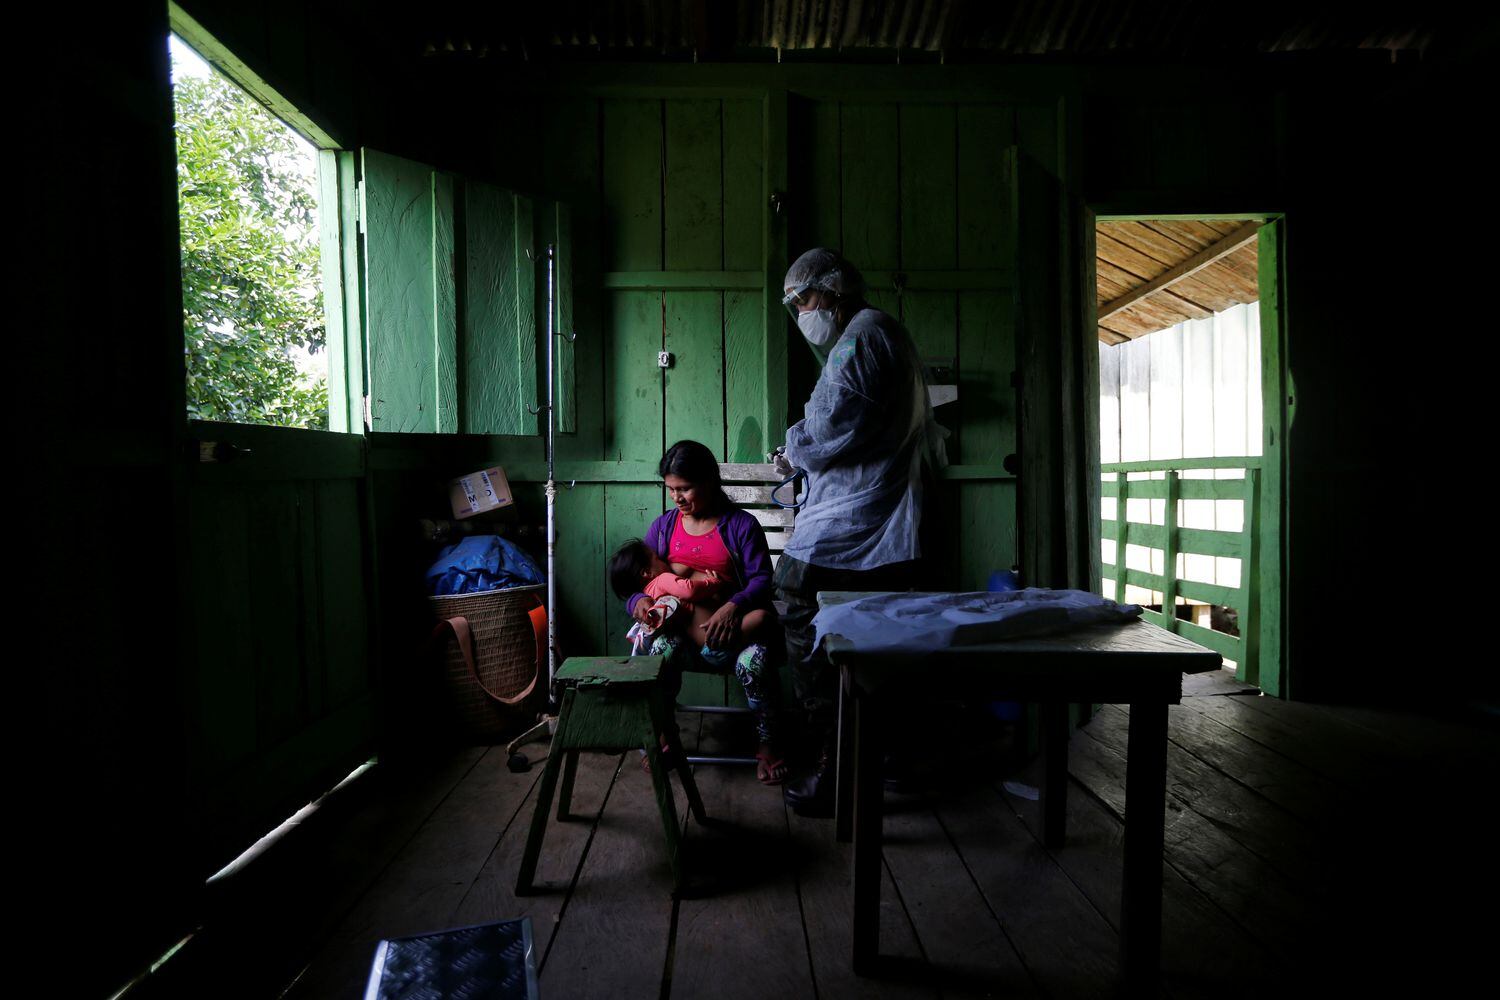 Integrante da equipe médica das Forças Armada examina mulher Yanomami.